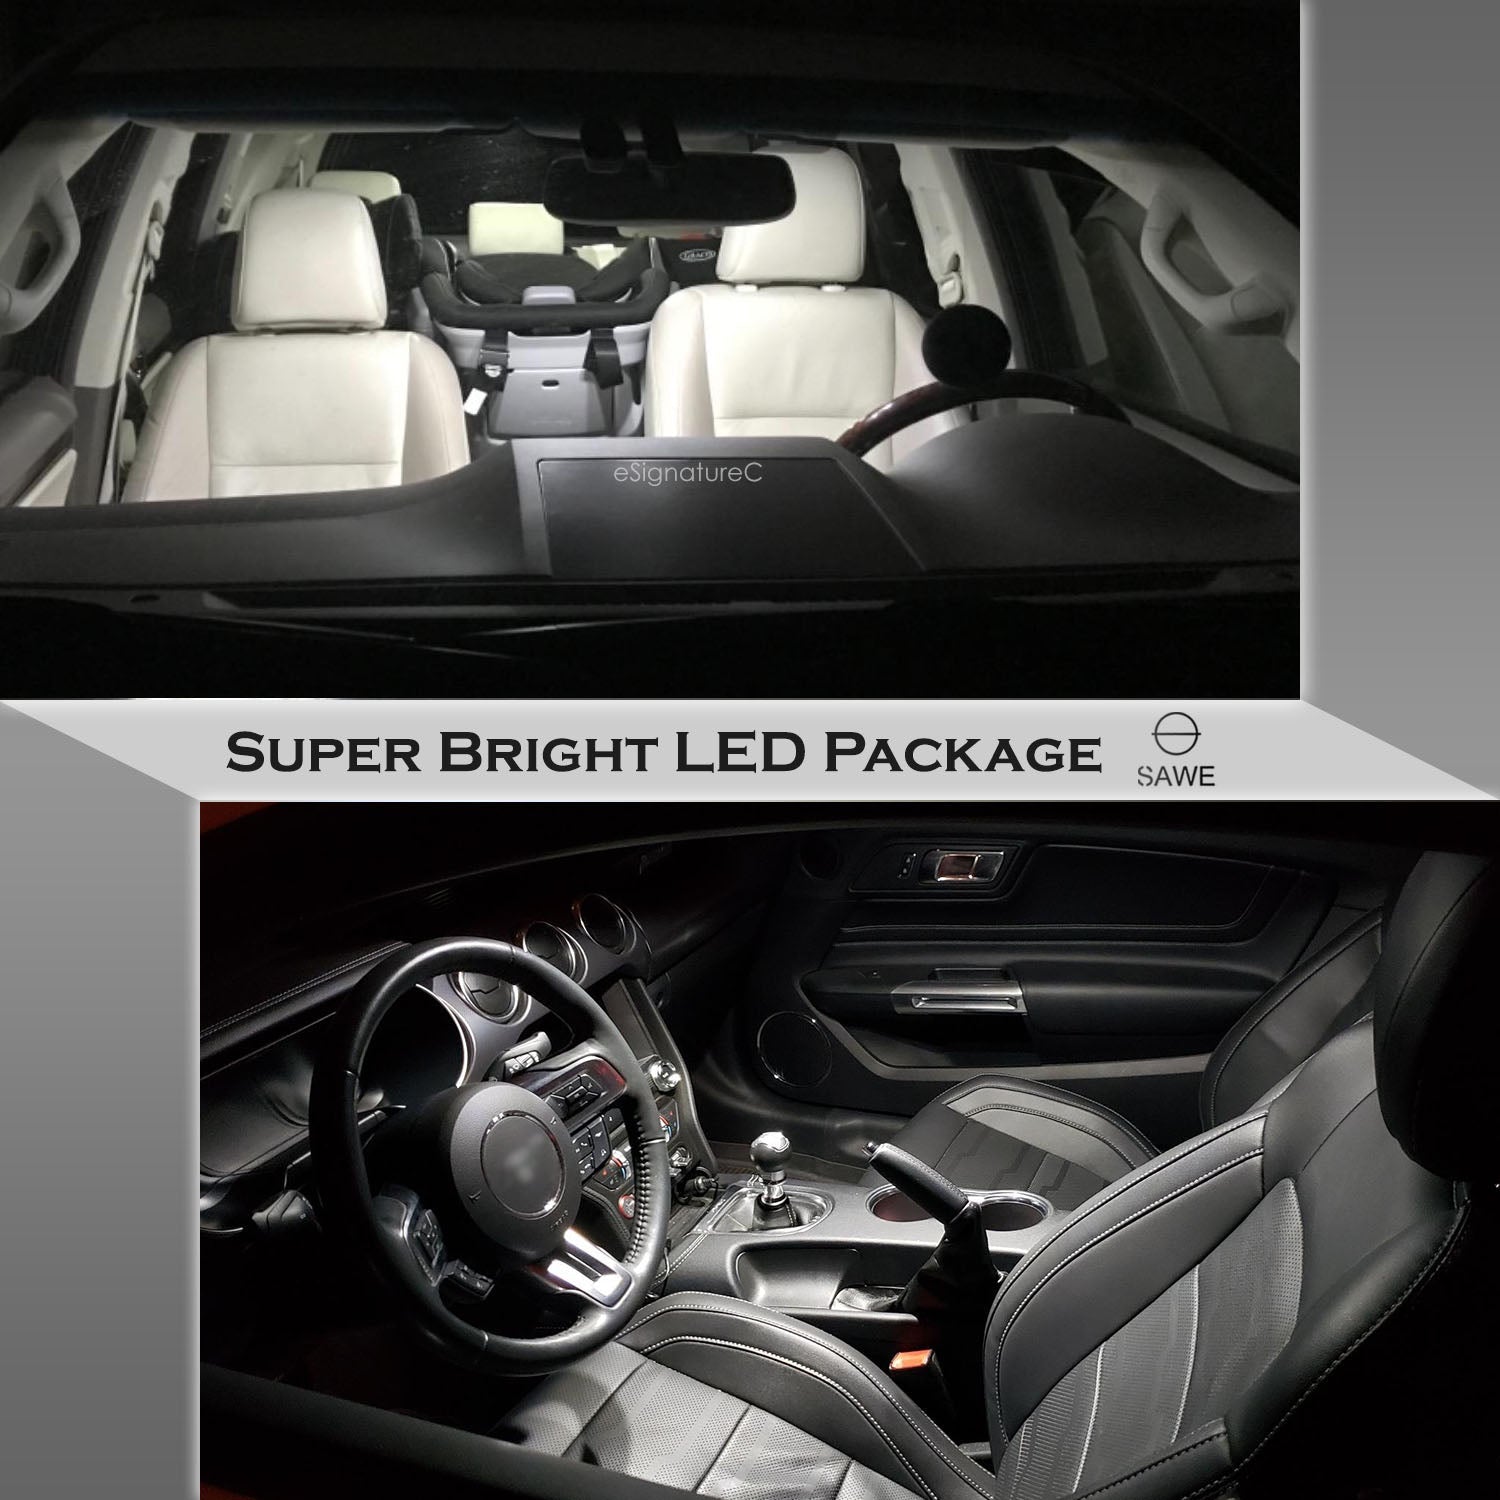 For Nissan Xterra Interior LED Lights - Dome & Map Light Bulbs Package Kit for 2005 - 2015 - White